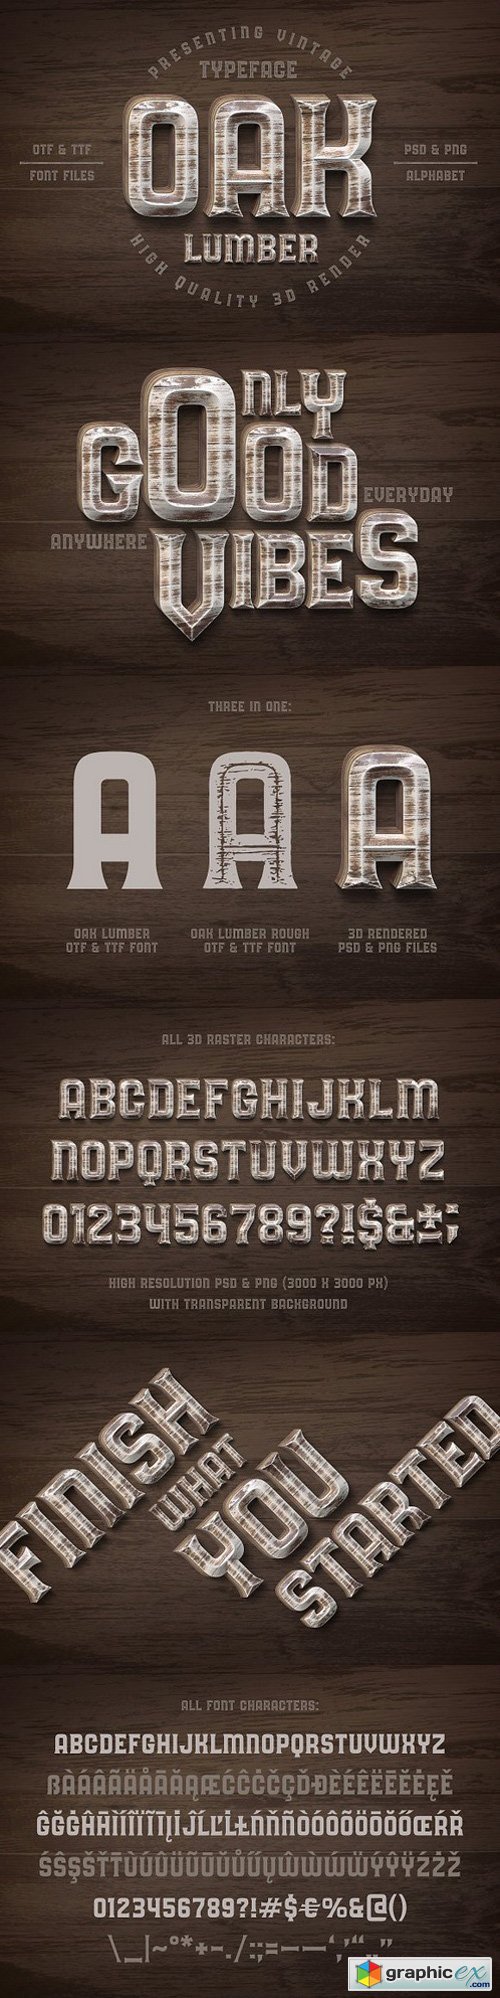 Oak Lumber Font